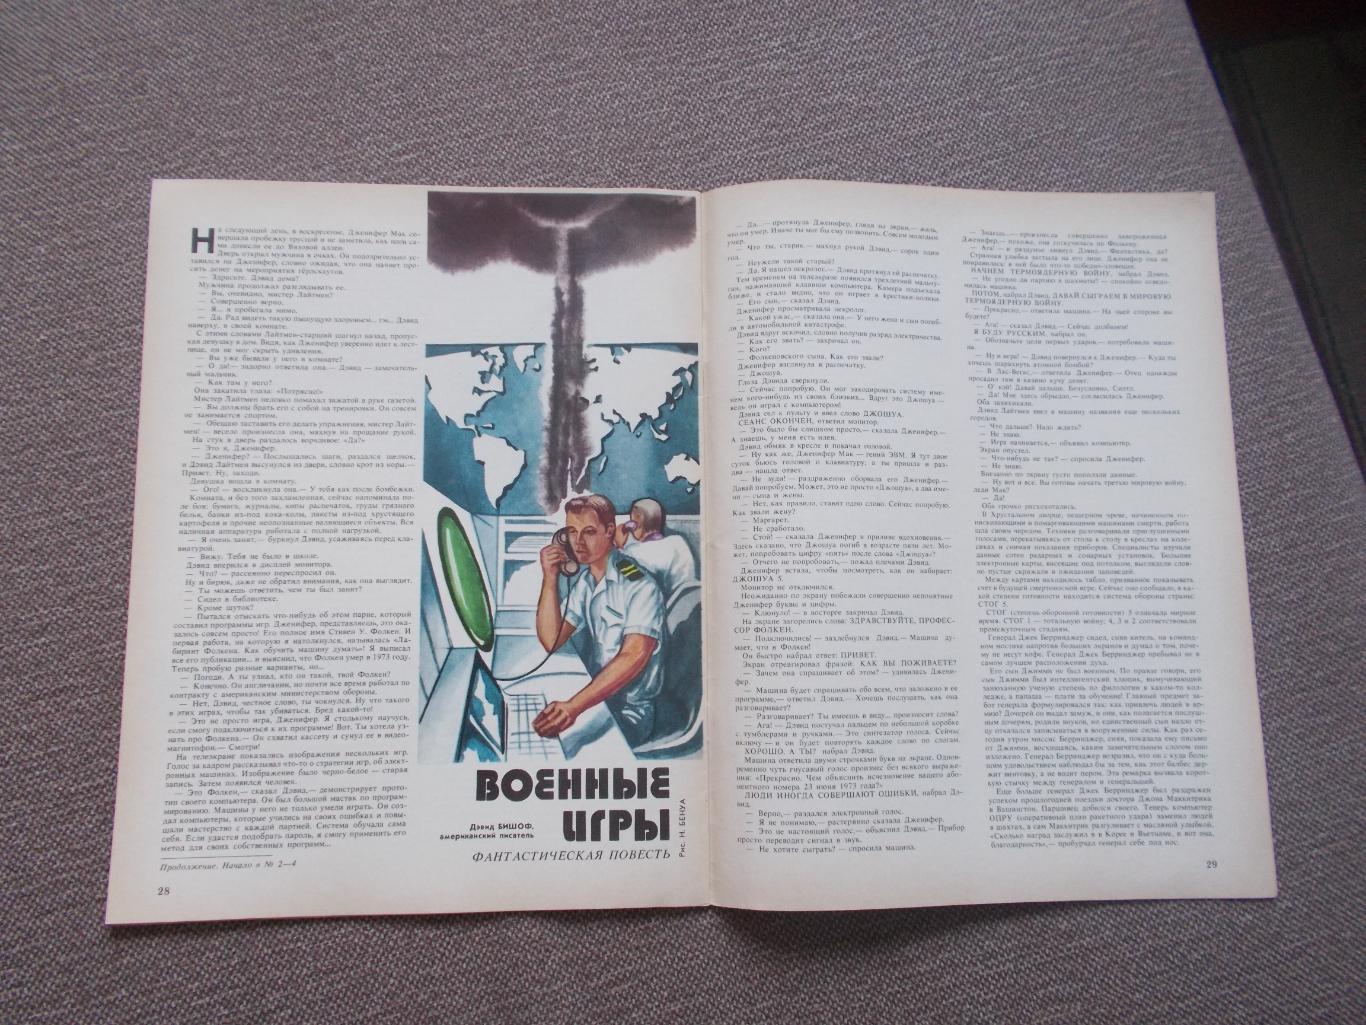 Журнал СССР :Ровесник№ 5 (май) 1986 г. (Молодежный музыкальный журнал) 2